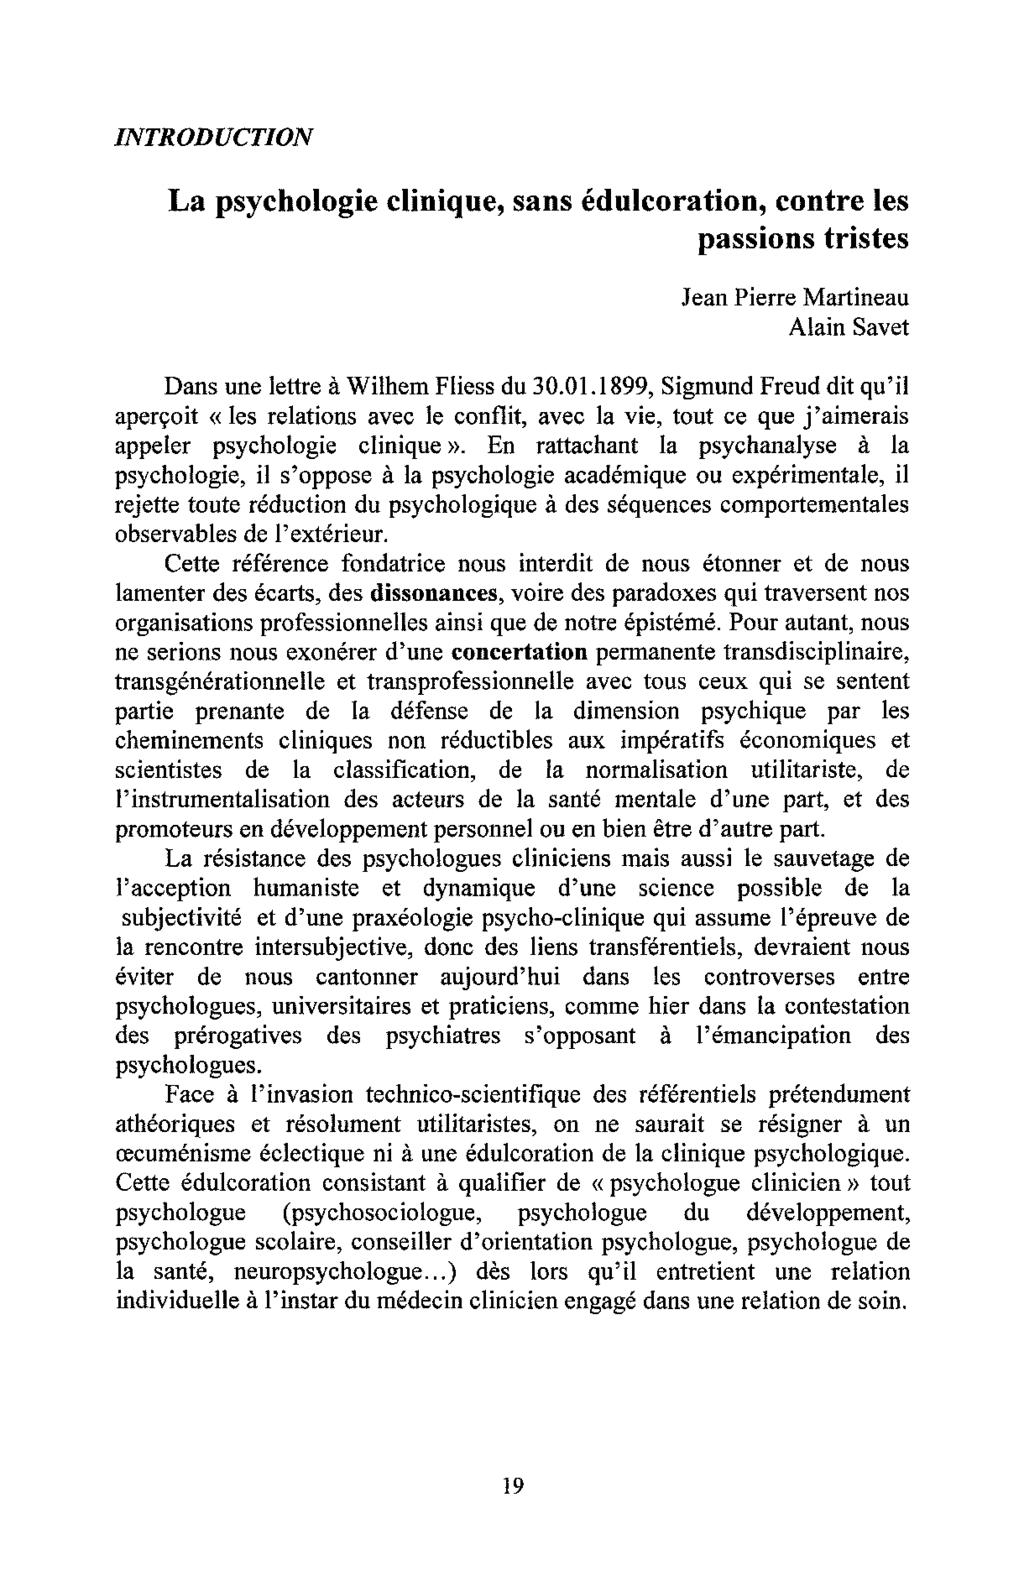 INTRODUCTION La psychologie clinique, sans édulcoration, contre les passions tristes Jean Pierre Martineau Alain Savet Dans une lettre à Wilhem Fliess du 30.01.